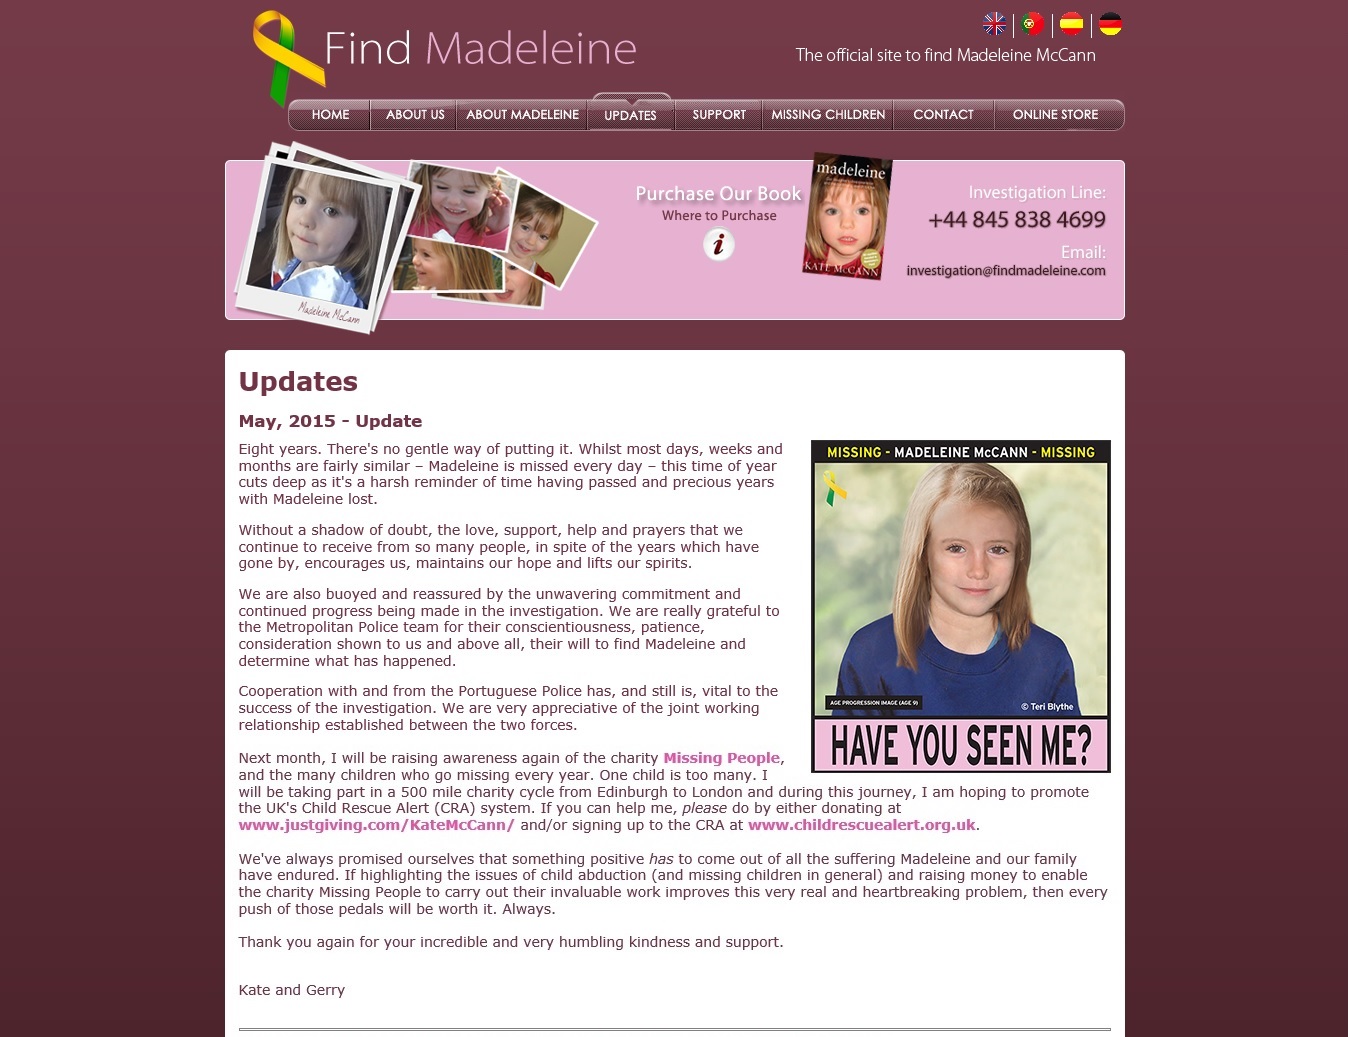 findmadeleine.com update, 01 May 2015